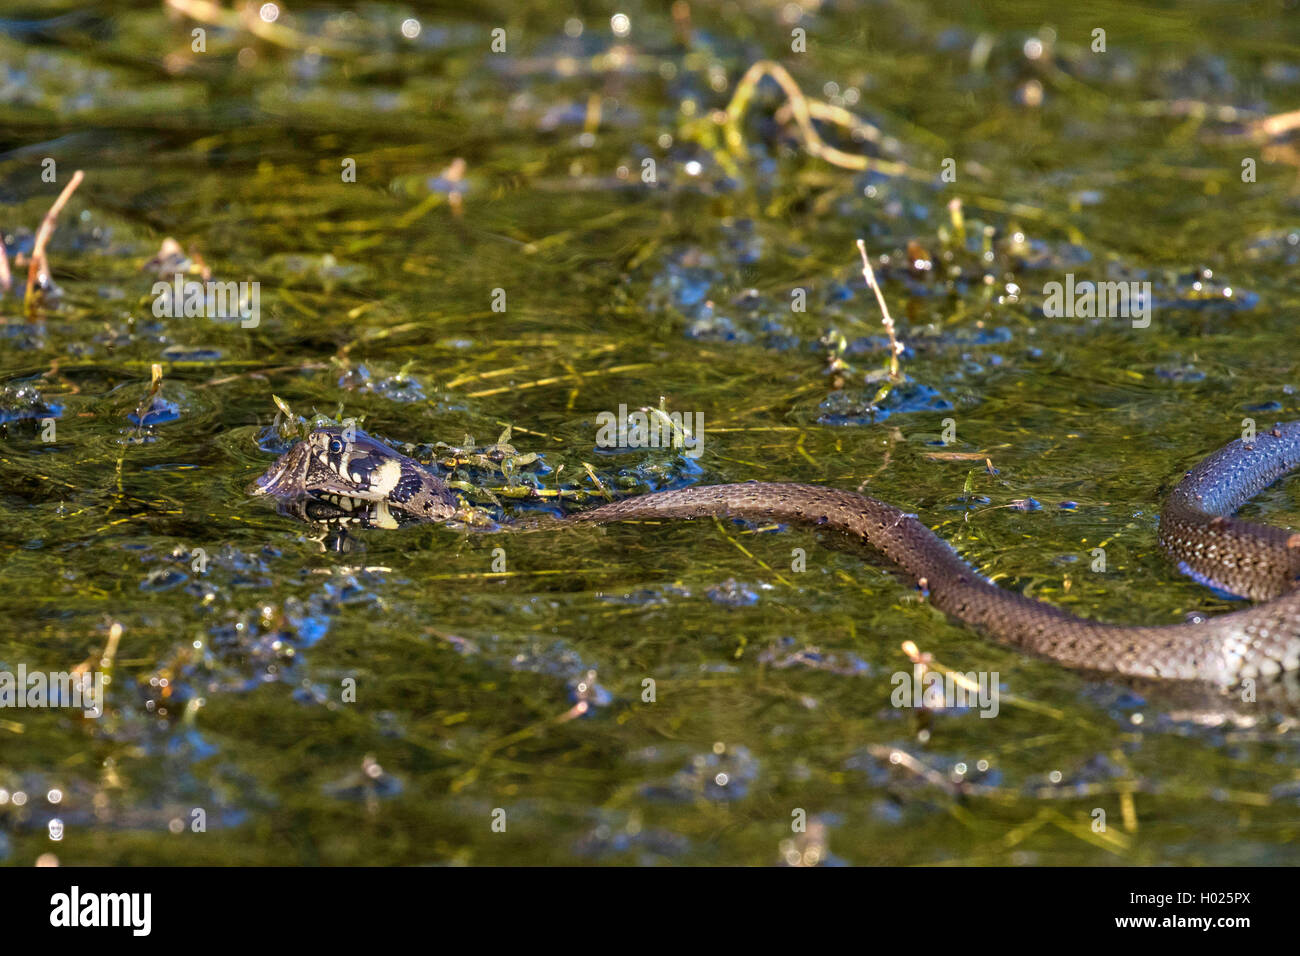 Couleuvre à collier (Natrix natrix), la natation de chasser plus de grenouille waterweeds dense, vue de côté, l'Allemagne, la Bavière Banque D'Images